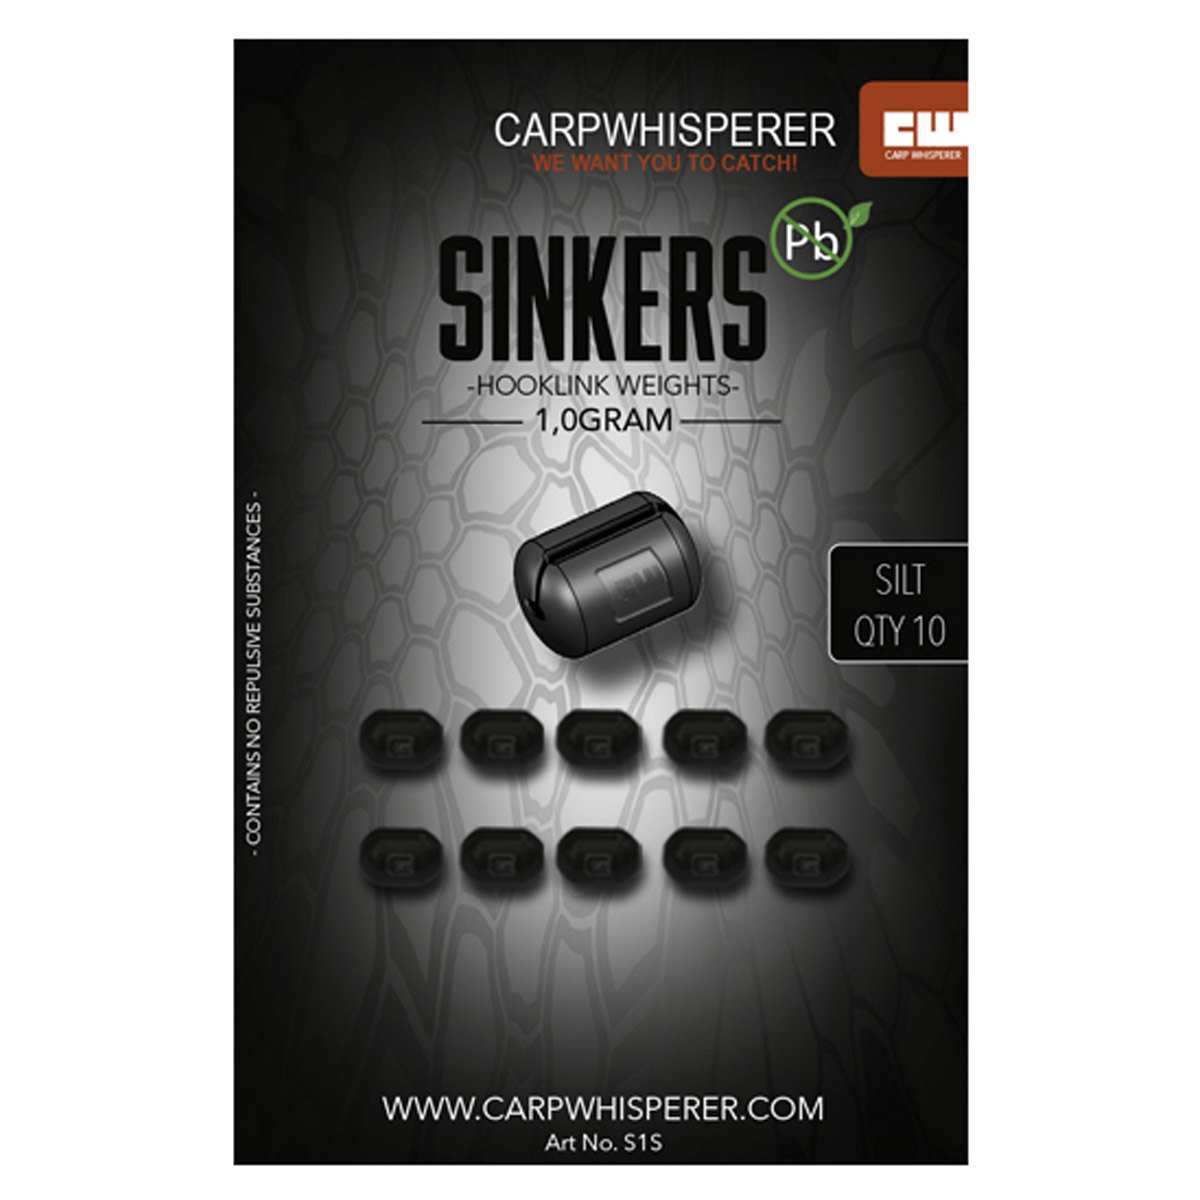 Carp Whisperer - Sinkers Quick Change Silt -  1 gram